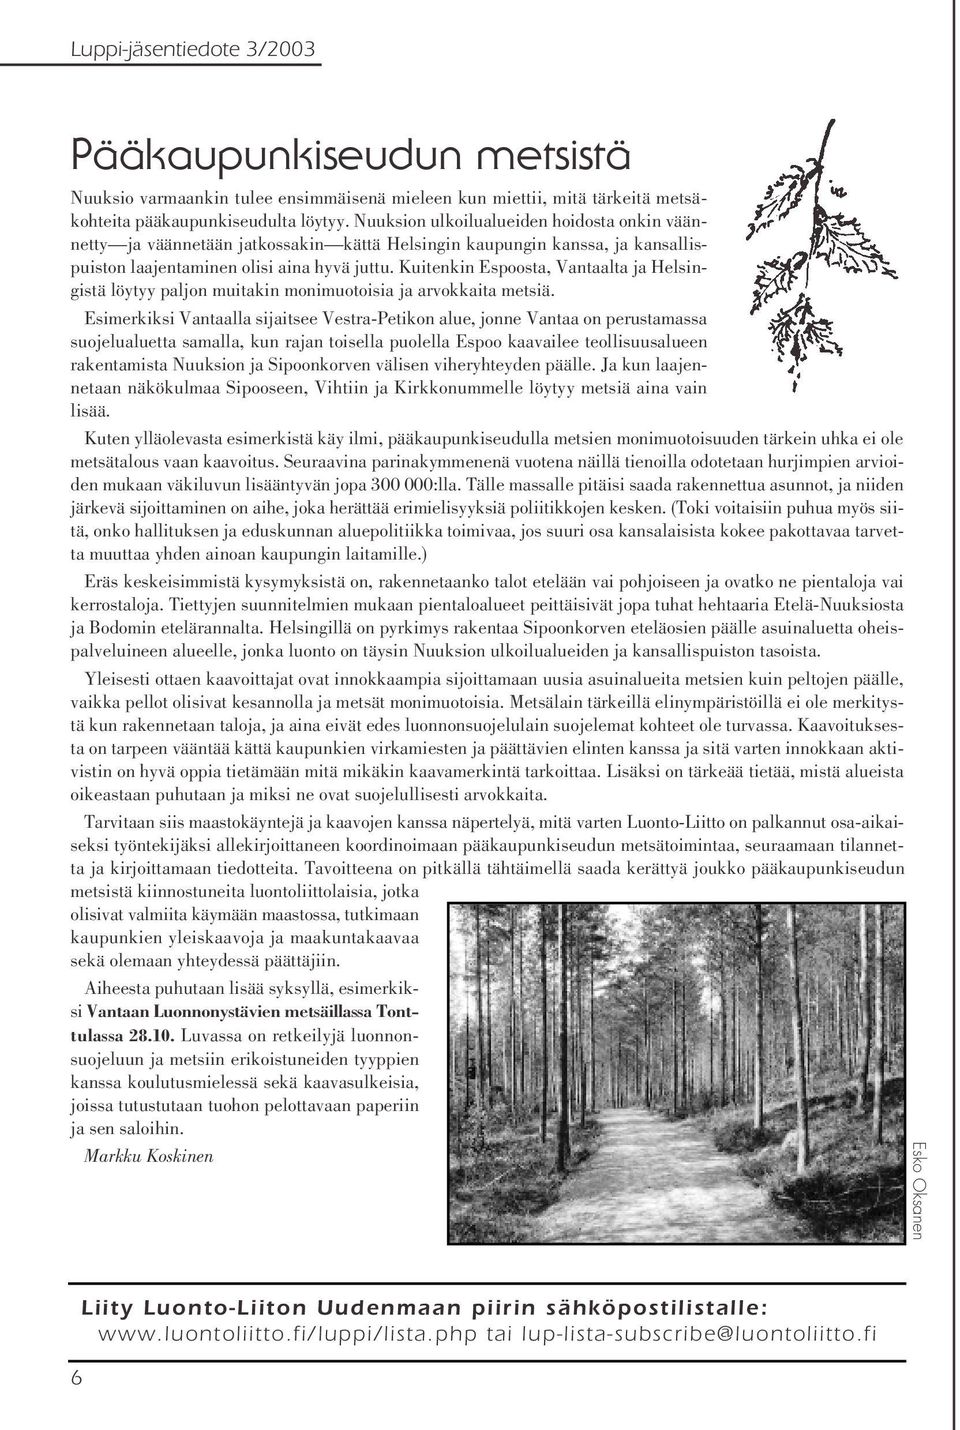 Kuitenkin Espoosta, Vantaalta ja Helsingistä löytyy paljon muitakin monimuotoisia ja arvokkaita metsiä.